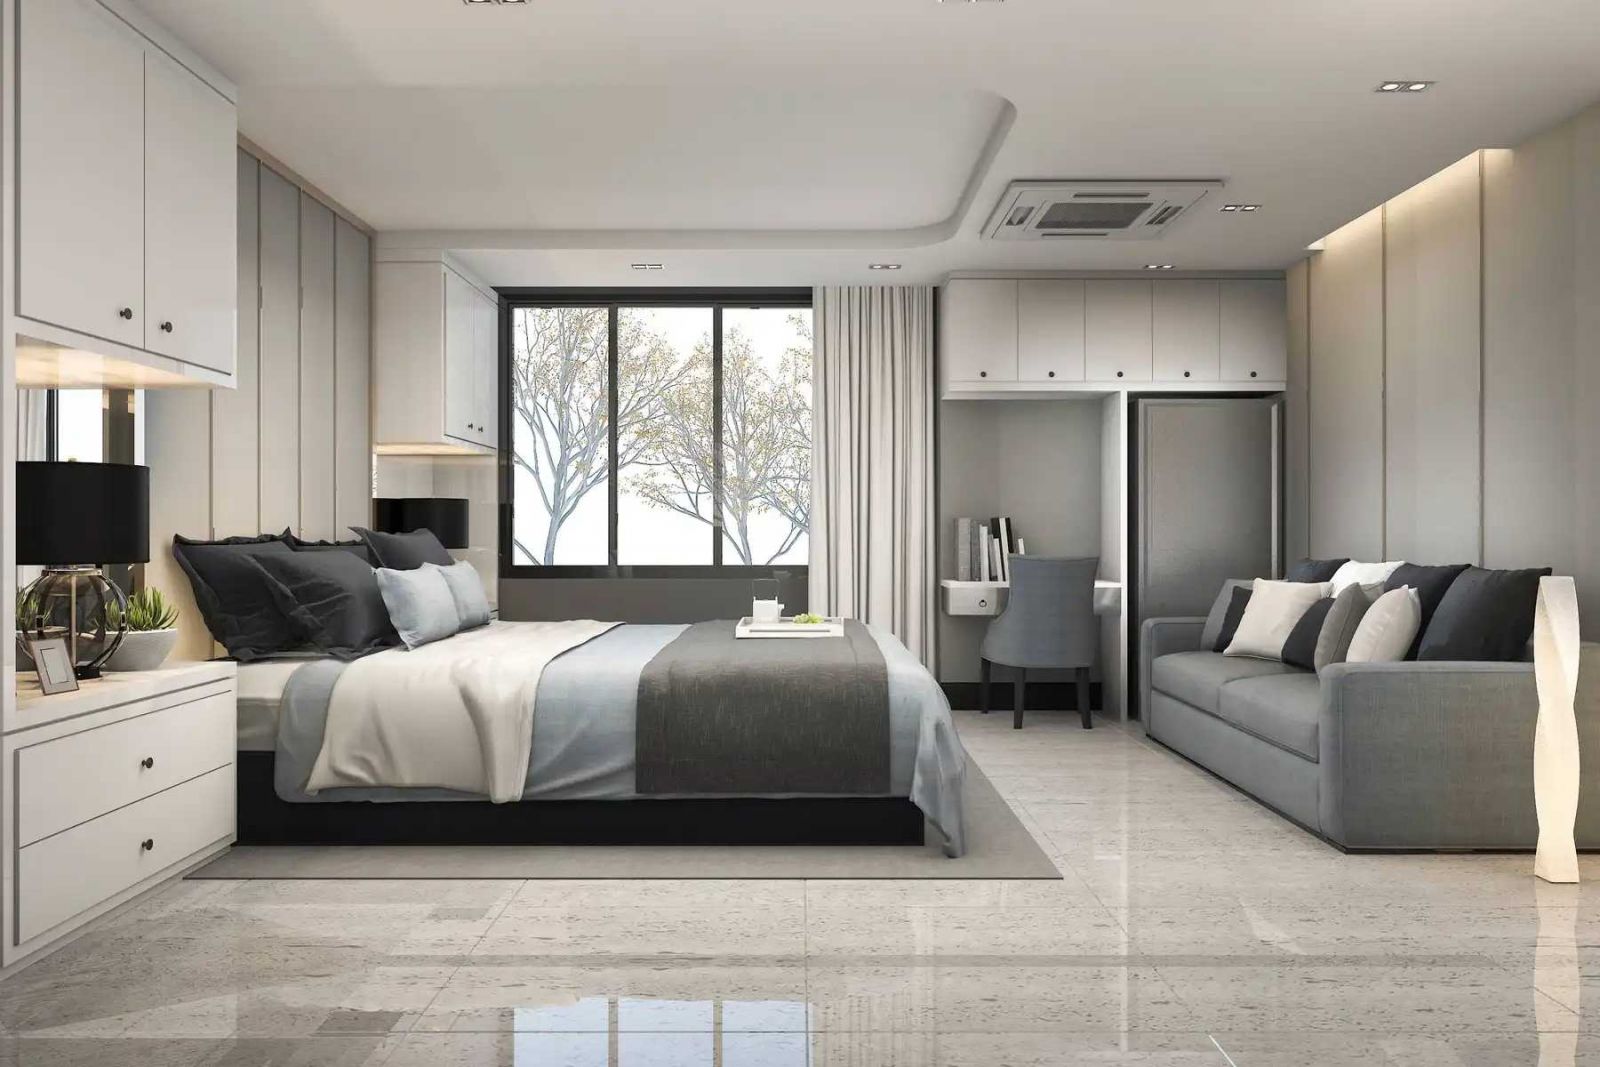 8 Nguyên tắc thiết kế nội thất phòng ngủ theo phong thủy